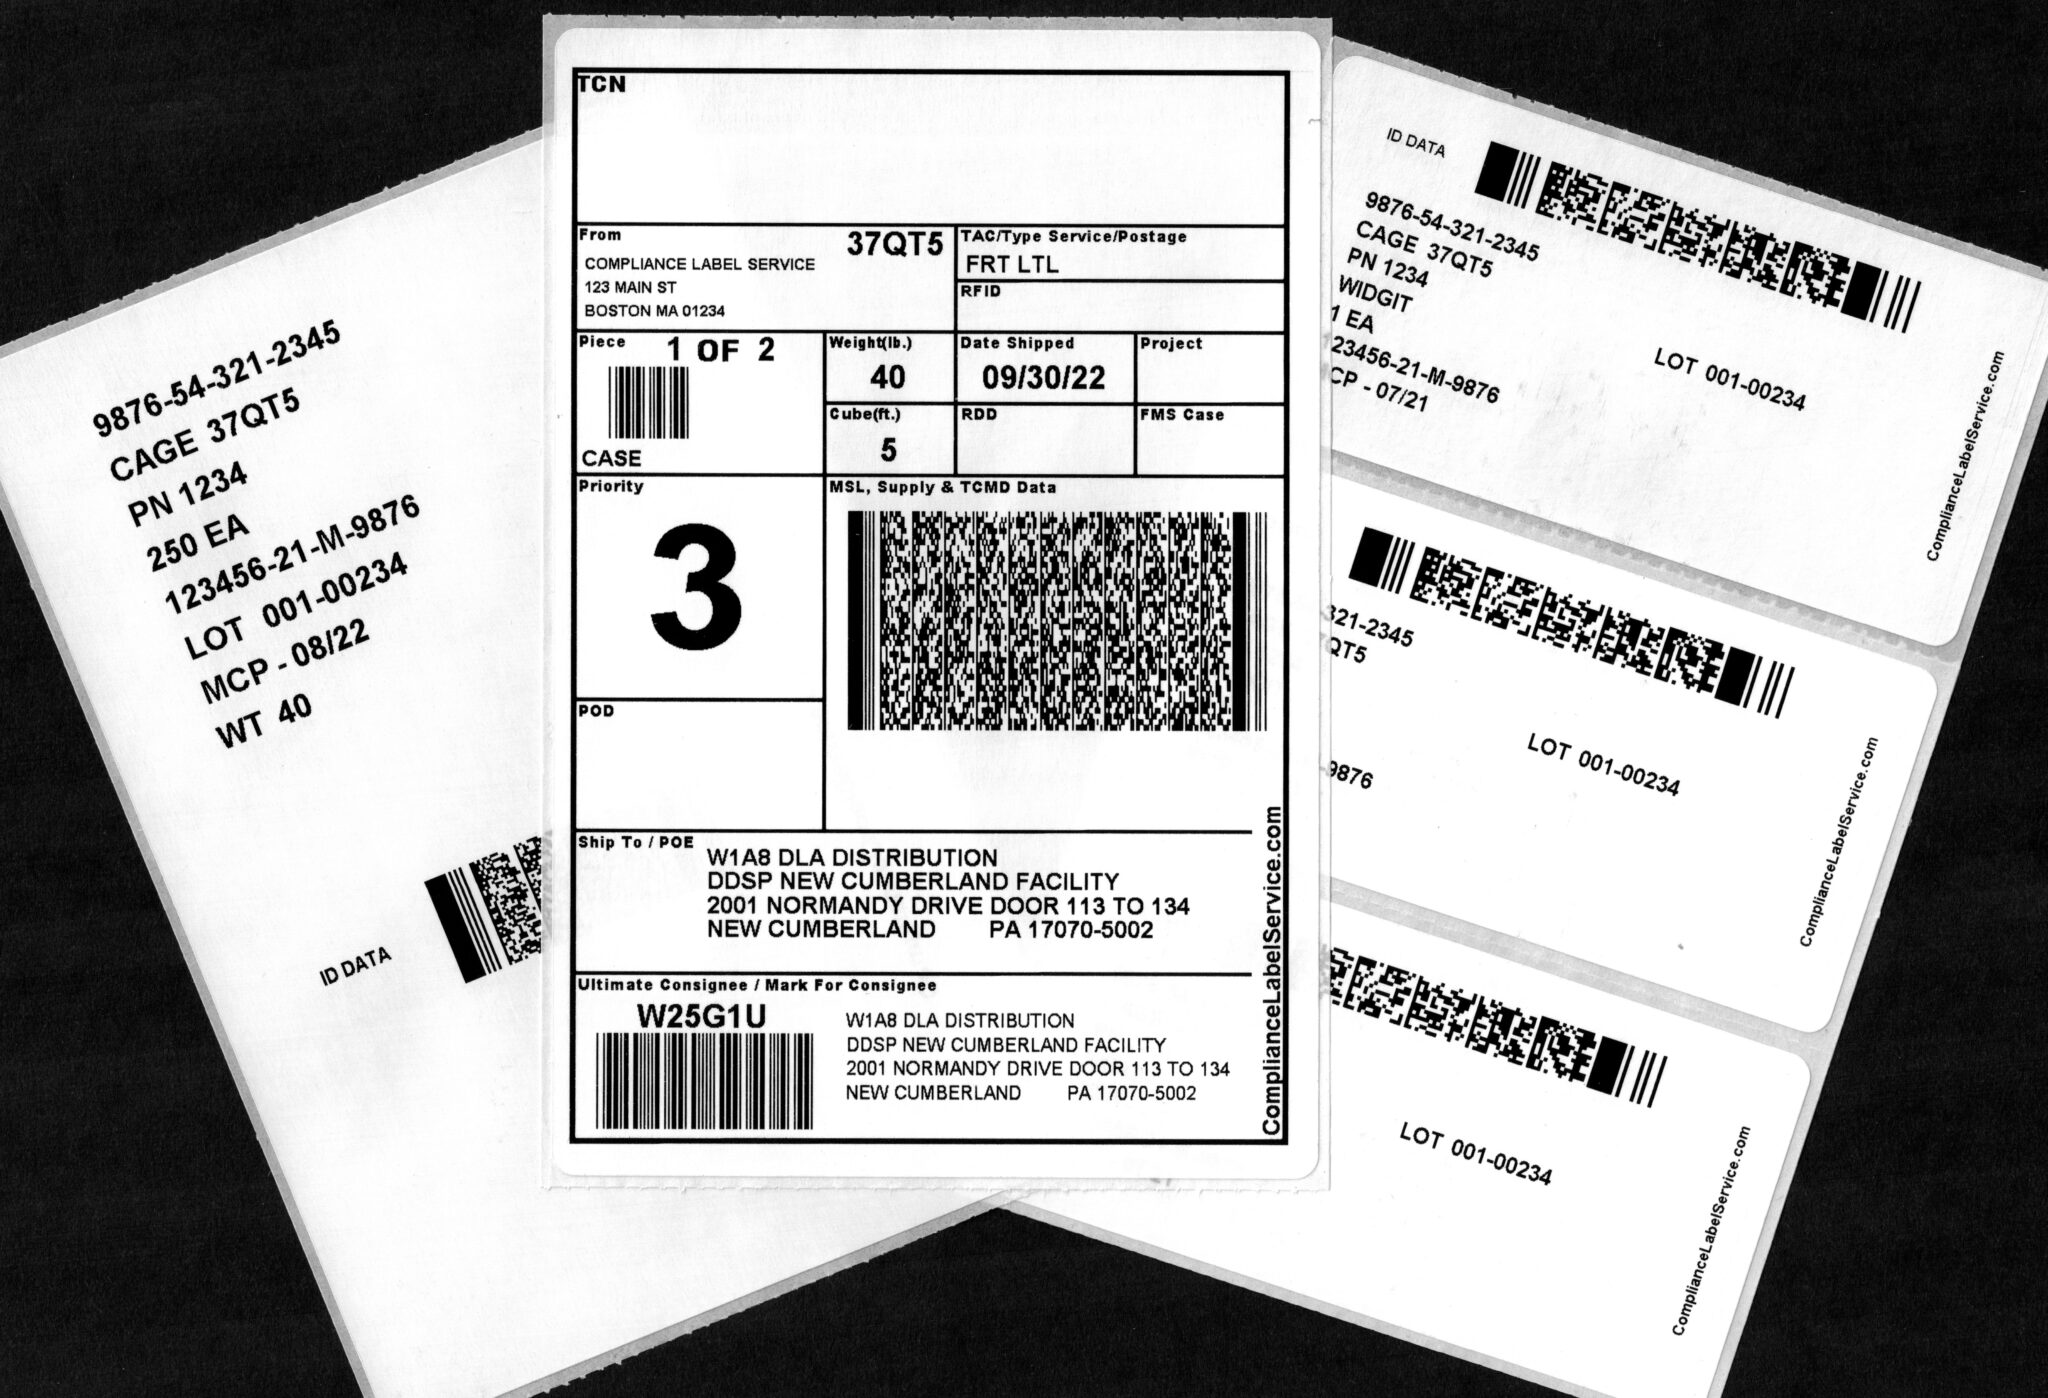 MILSTD129 Documents & Resources Compliance Label Service